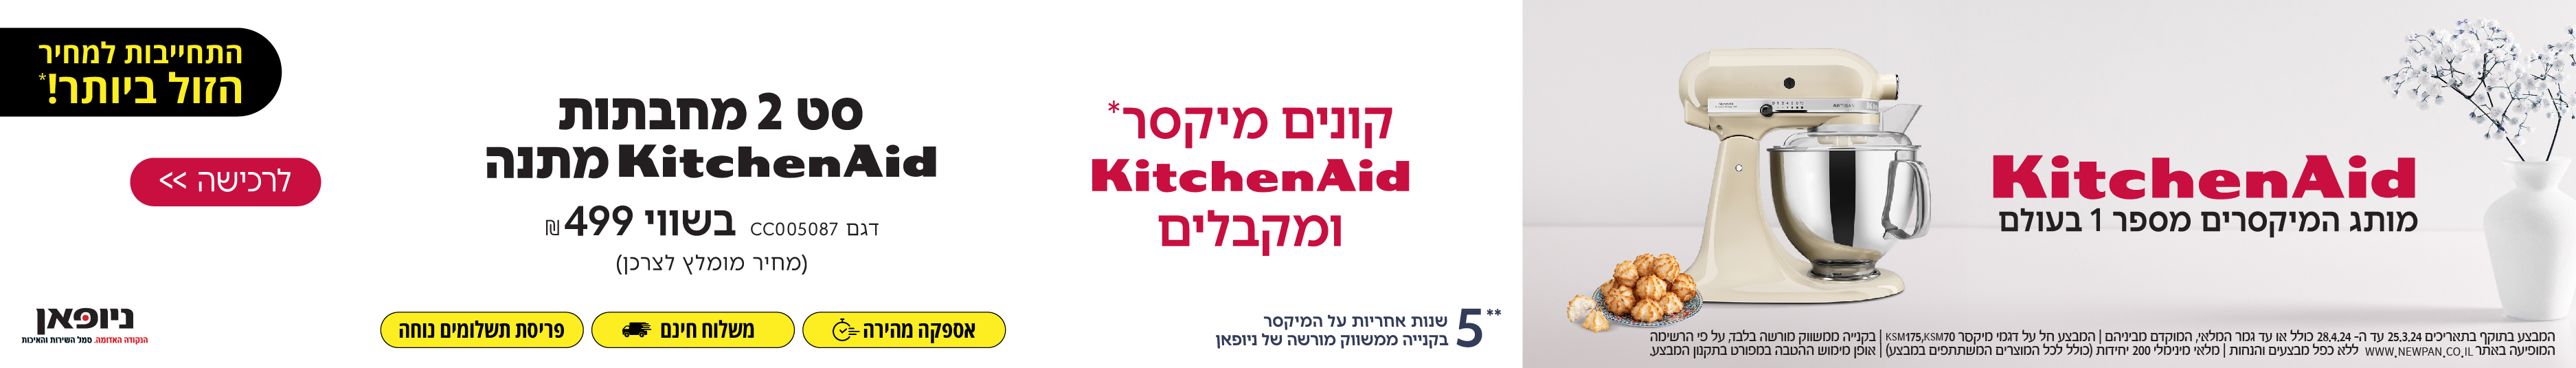 קונים מיקסר KitchenAid ומקבלים סט 2 מחבתות KitchenAid במתנה!